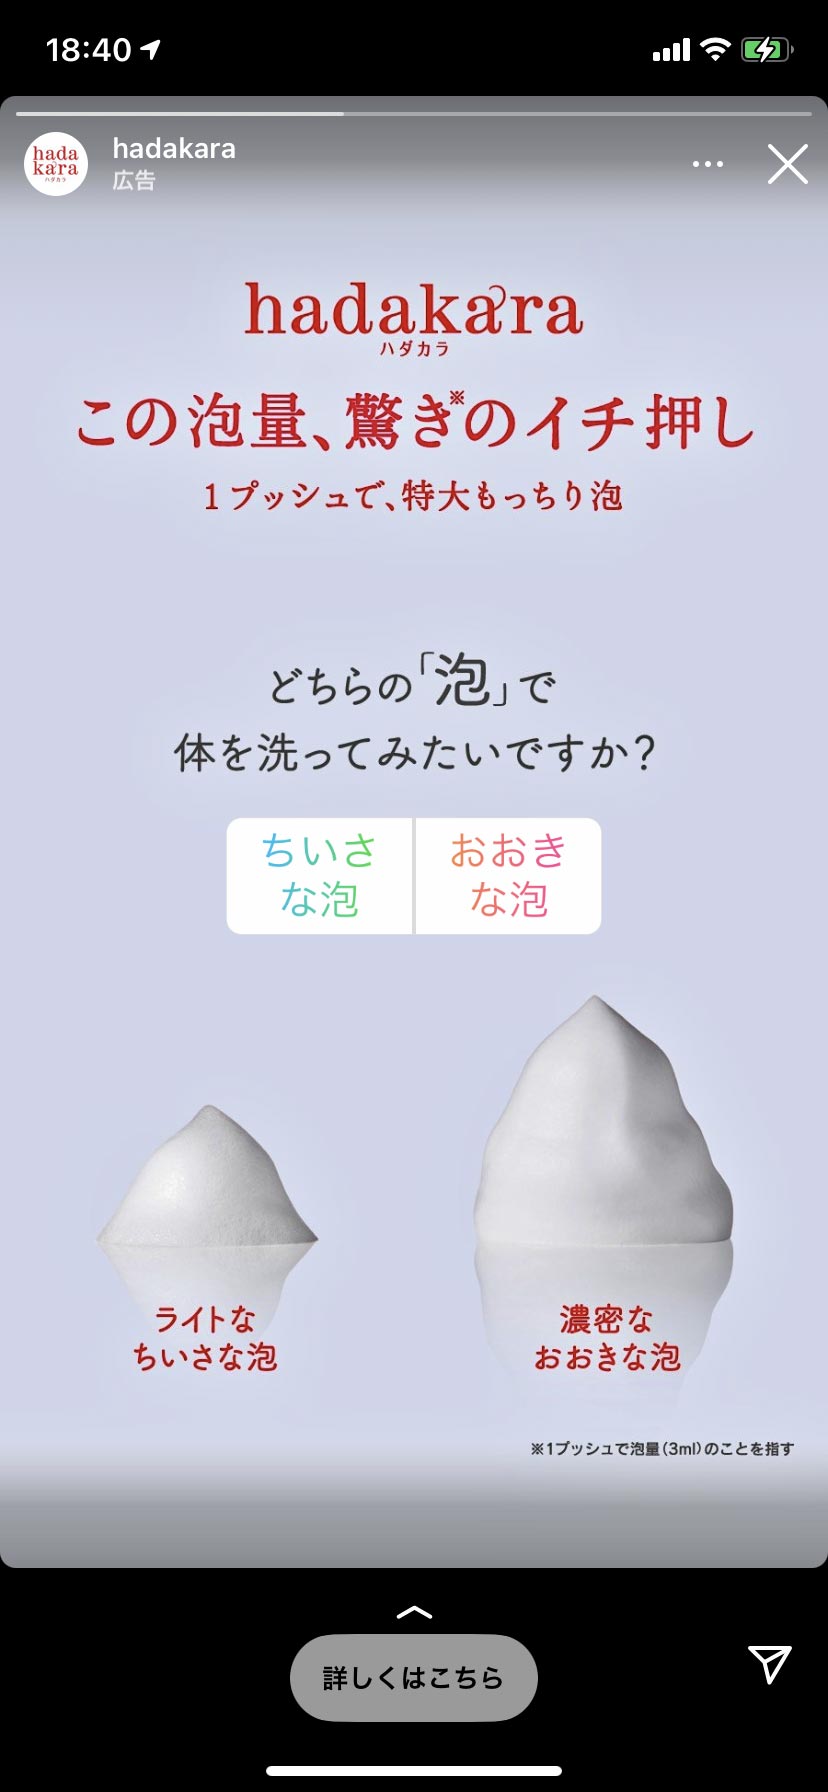 「hadakara」広告のYES/NOボタン